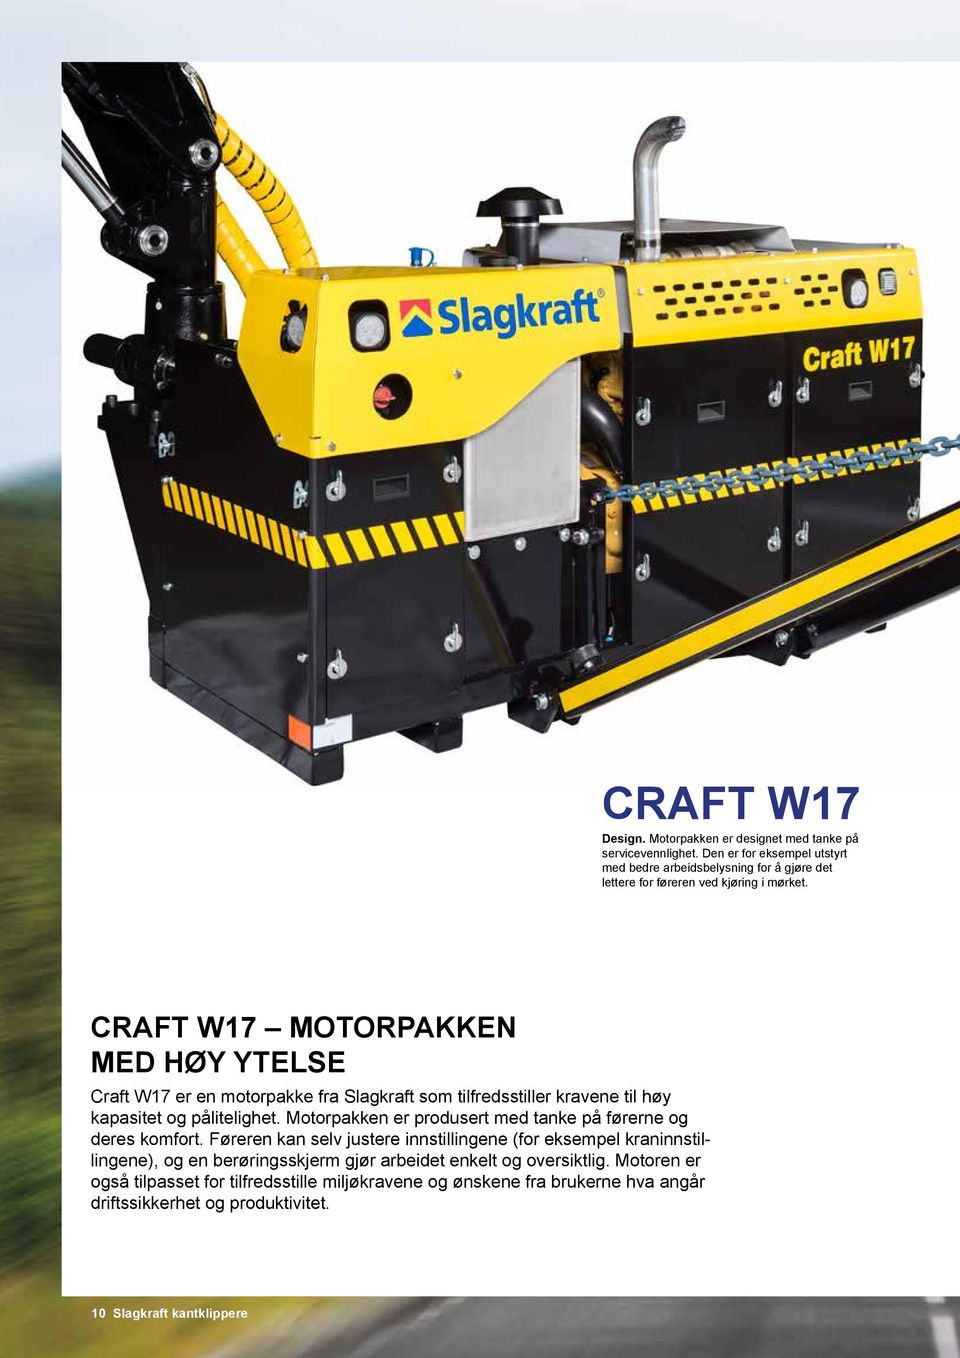 CRAFT W17 MOTORPAKKEN MED HØY YTELSE Craft W17 er en motorpakke fra Slagkraft som tilfredsstiller kravene til høy kapasitet og pålitelighet.